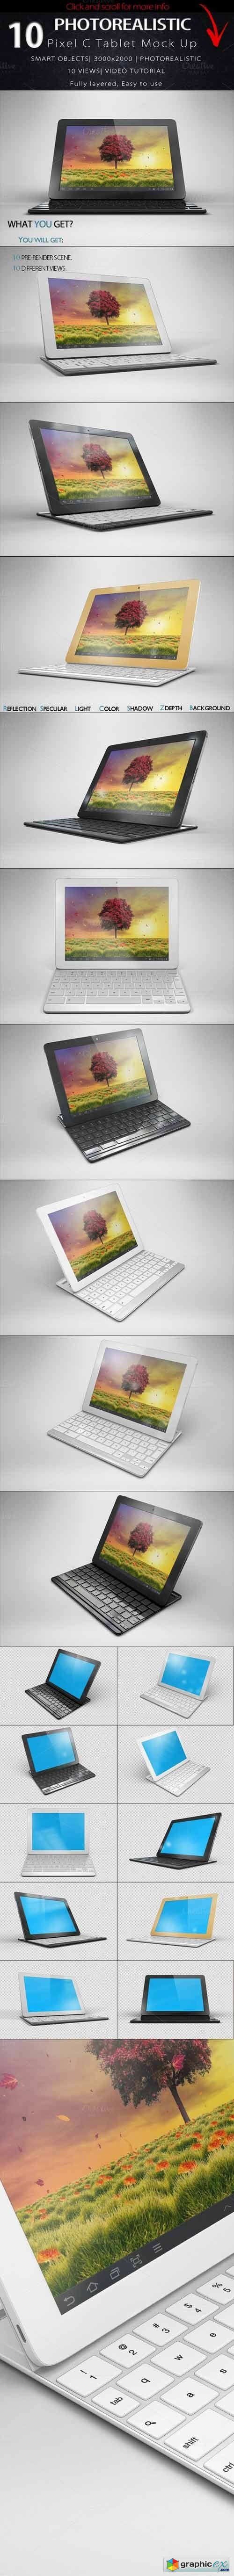 BUNDLE Google Pixel C Tablet Mock Up